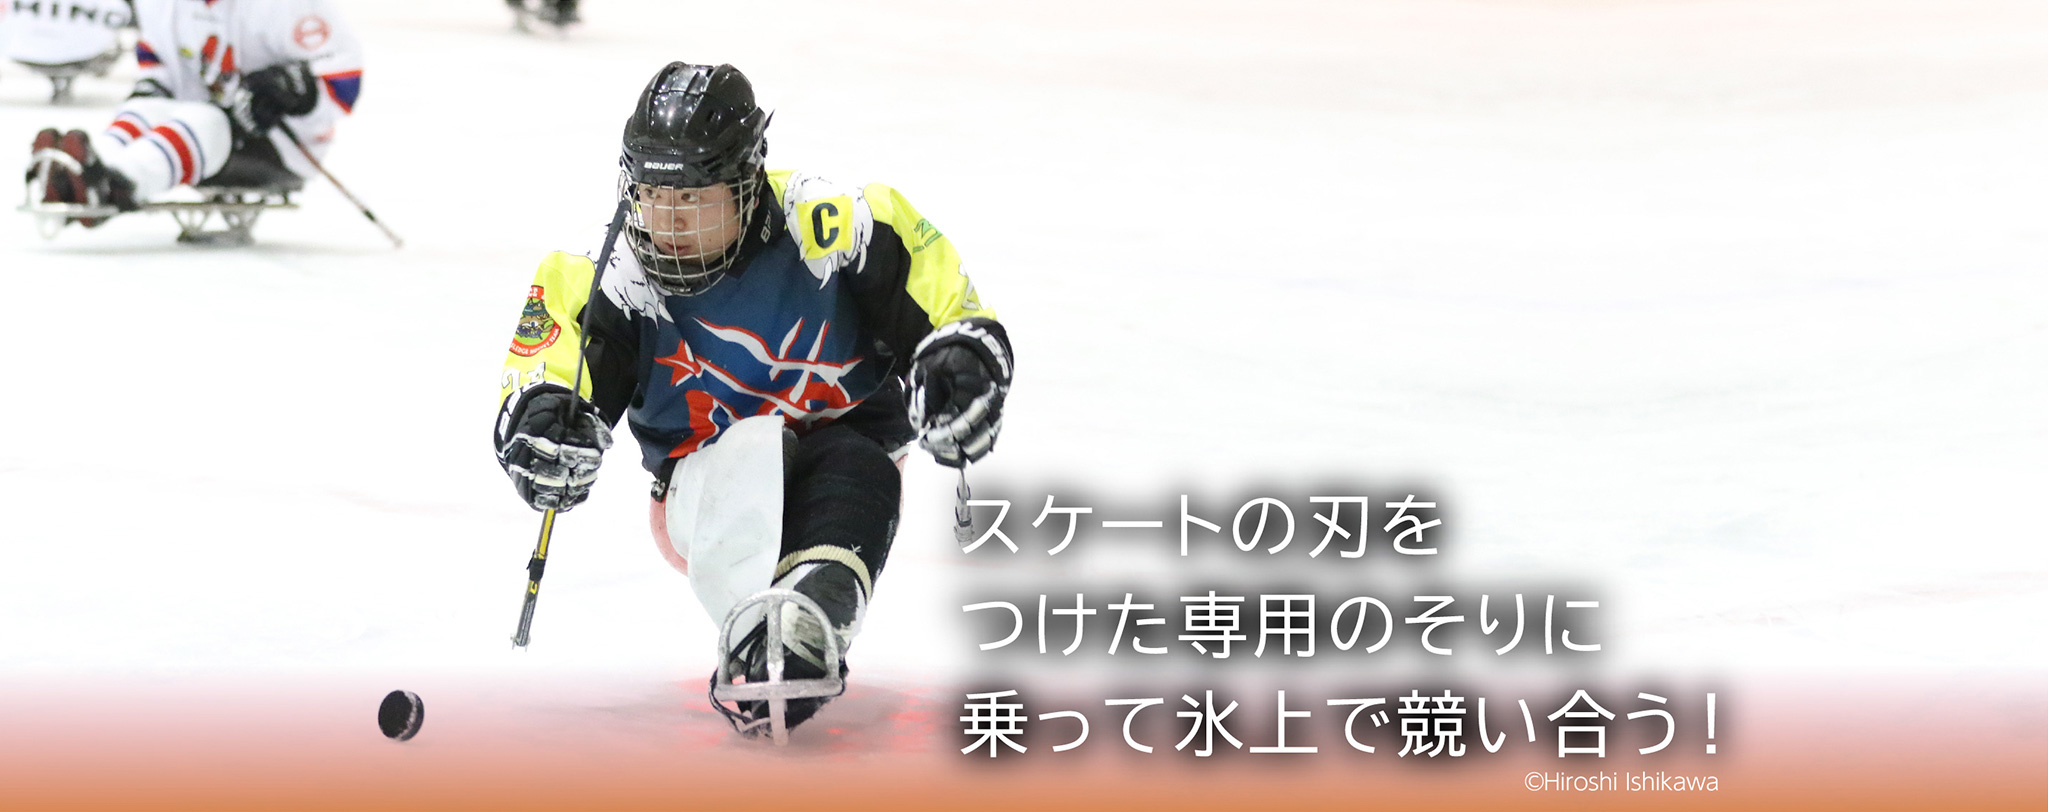 スケートの刃をつけた専用のそりに乗って氷上で競い合う！©Hiroshi Ishikawa